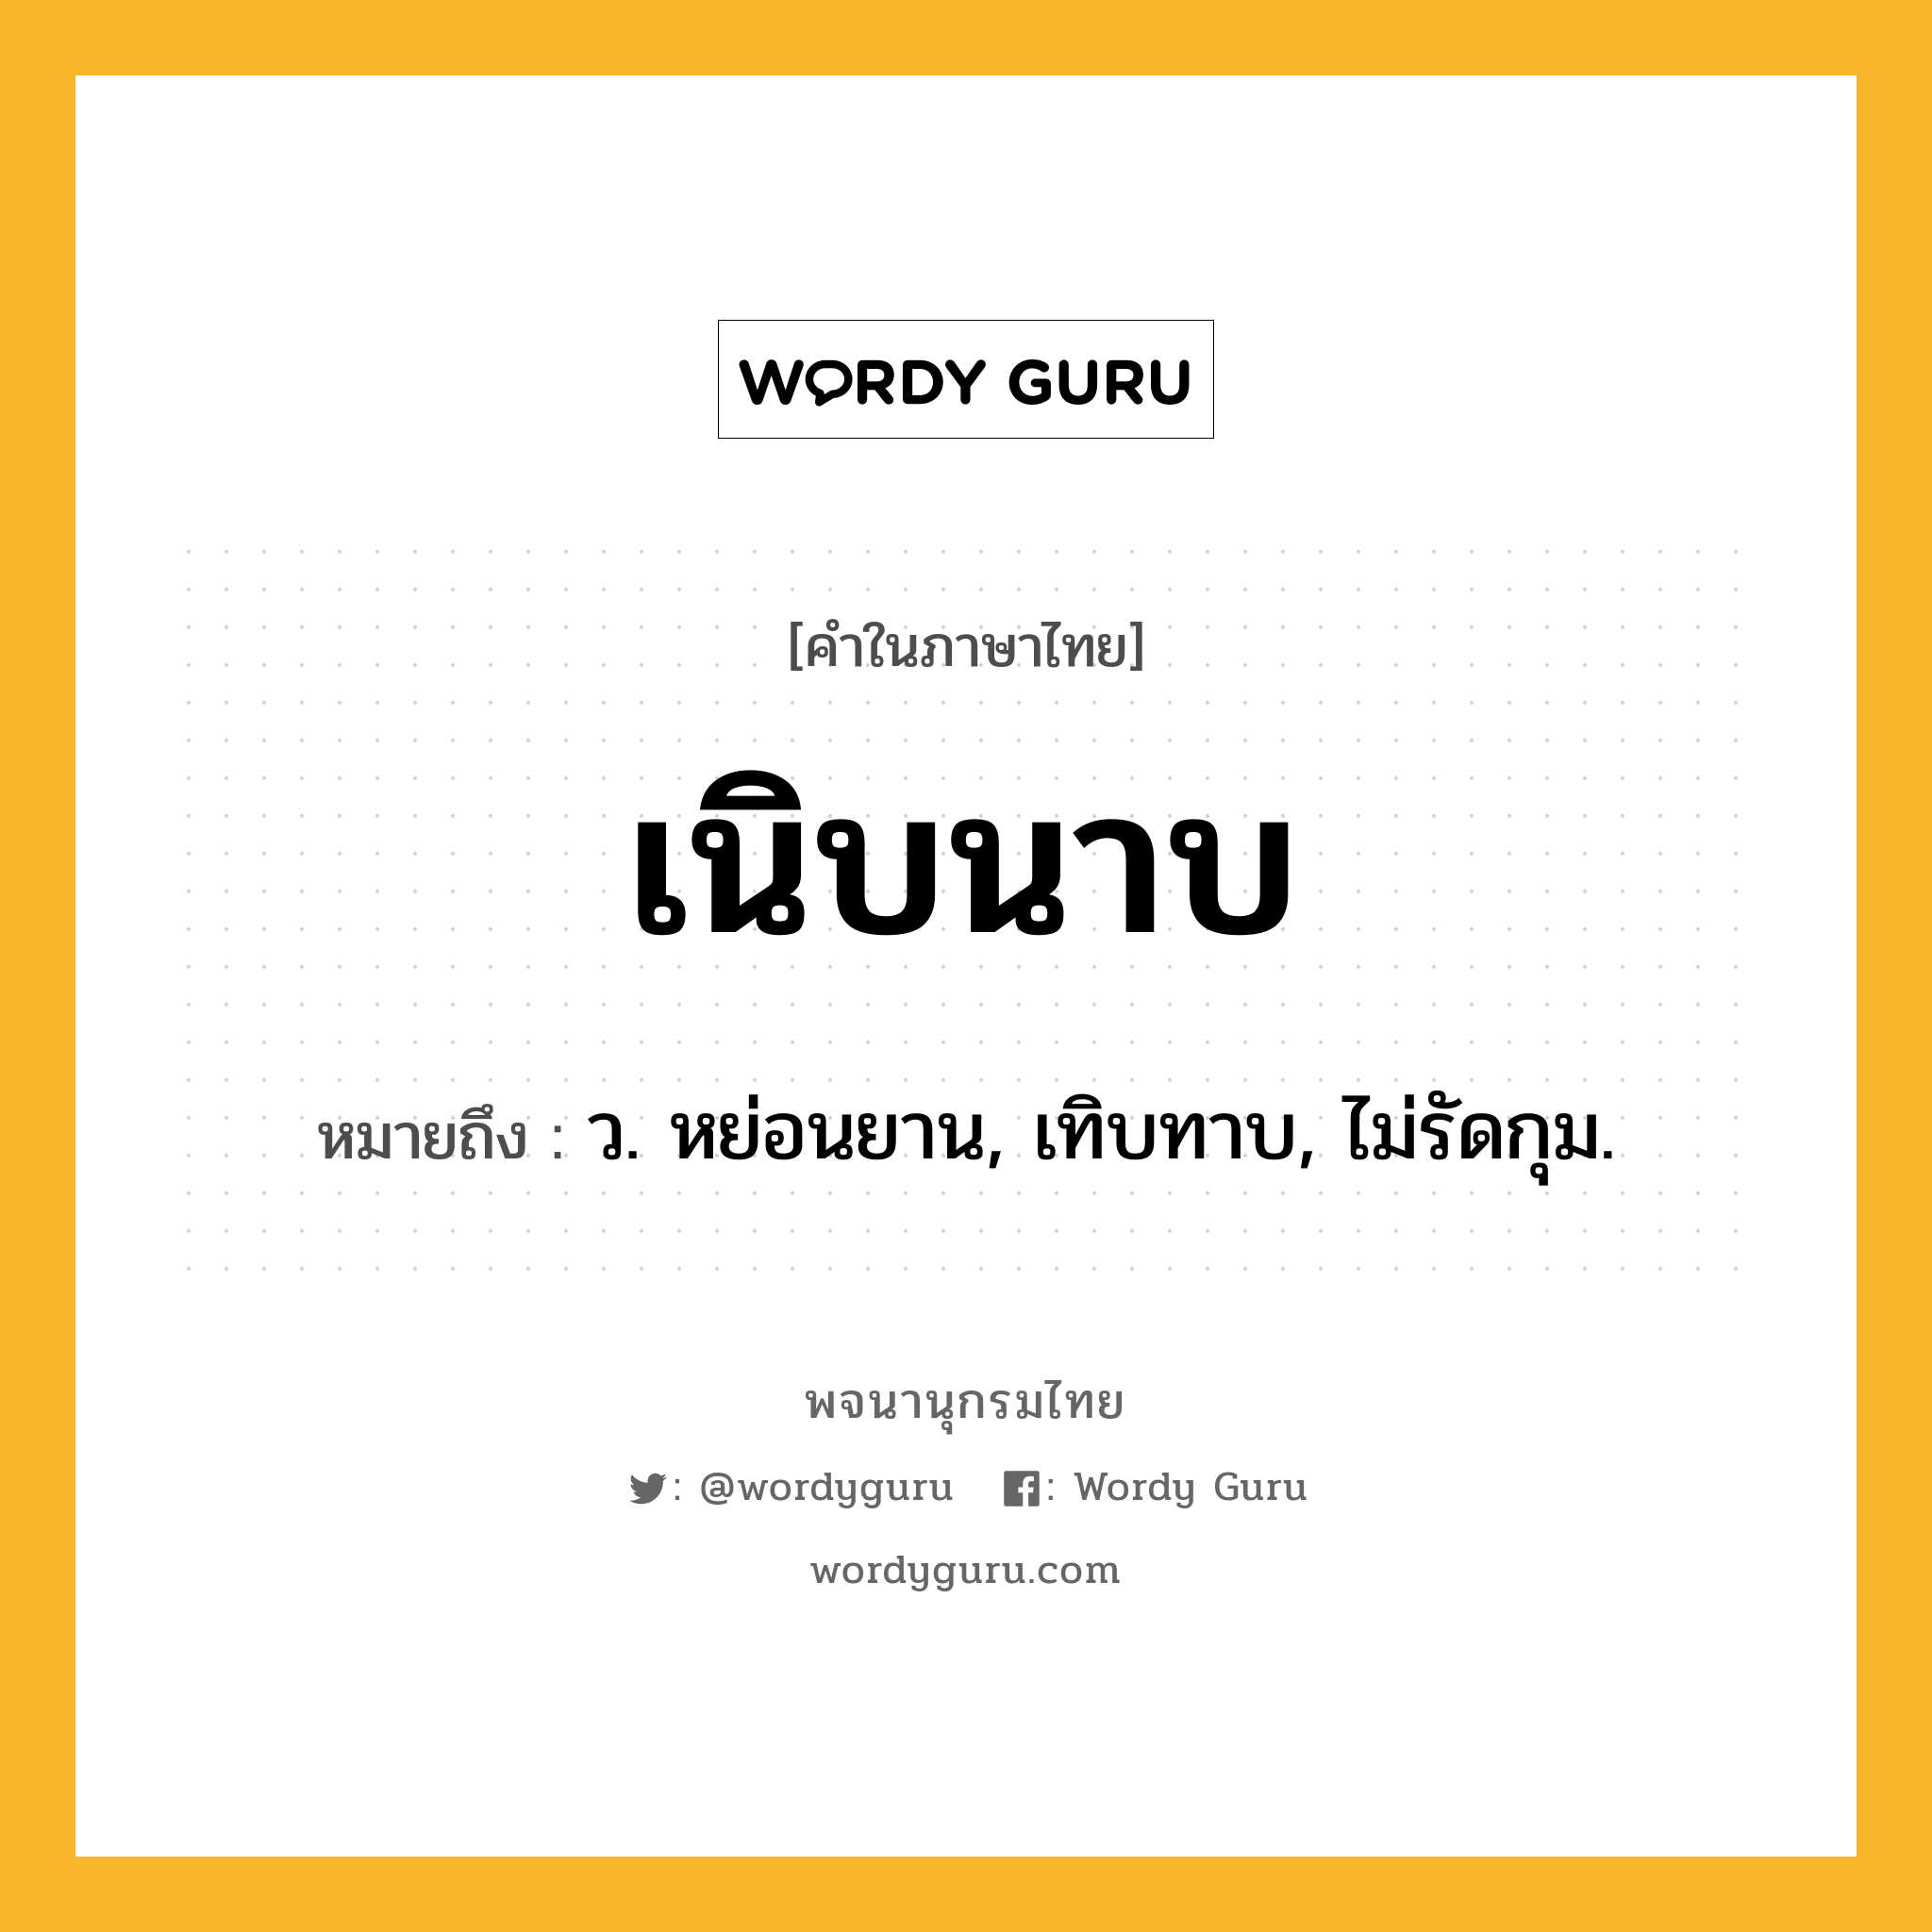 เนิบนาบ หมายถึงอะไร?, คำในภาษาไทย เนิบนาบ หมายถึง ว. หย่อนยาน, เทิบทาบ, ไม่รัดกุม.